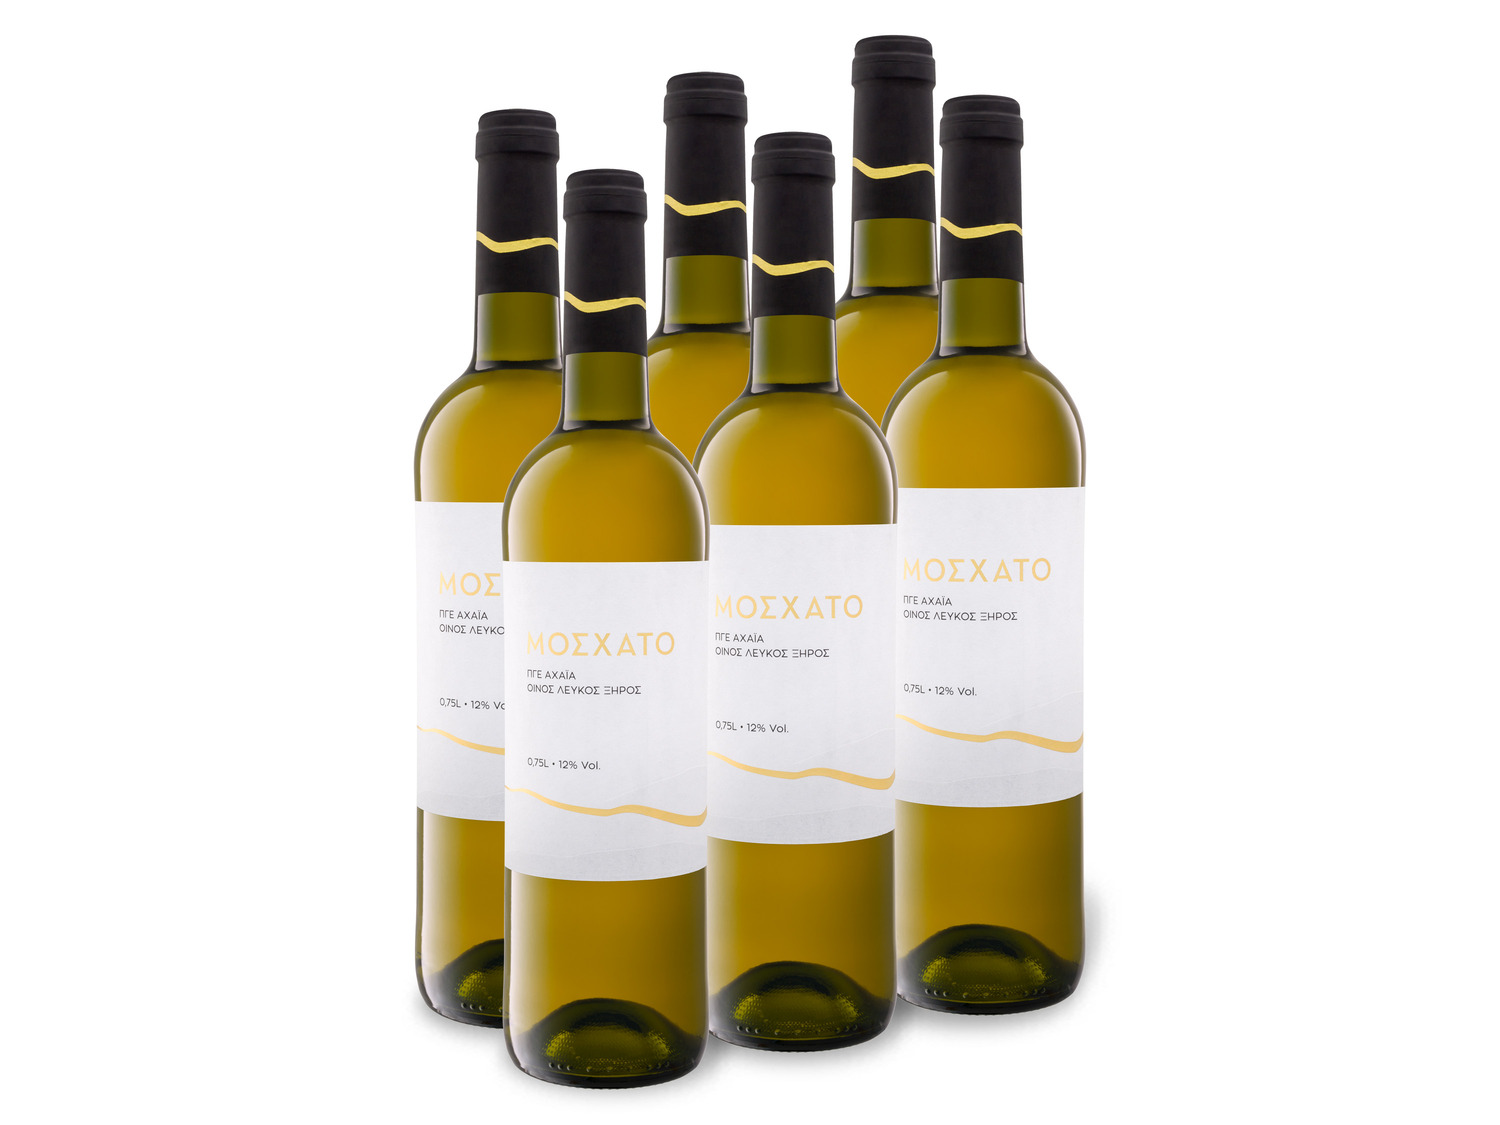 Weißwein 6 - x Lidl / DE trocken, Achaia 0,75-l-Flasche / Weinpaket Compare Price ᐉ Moschato PGI